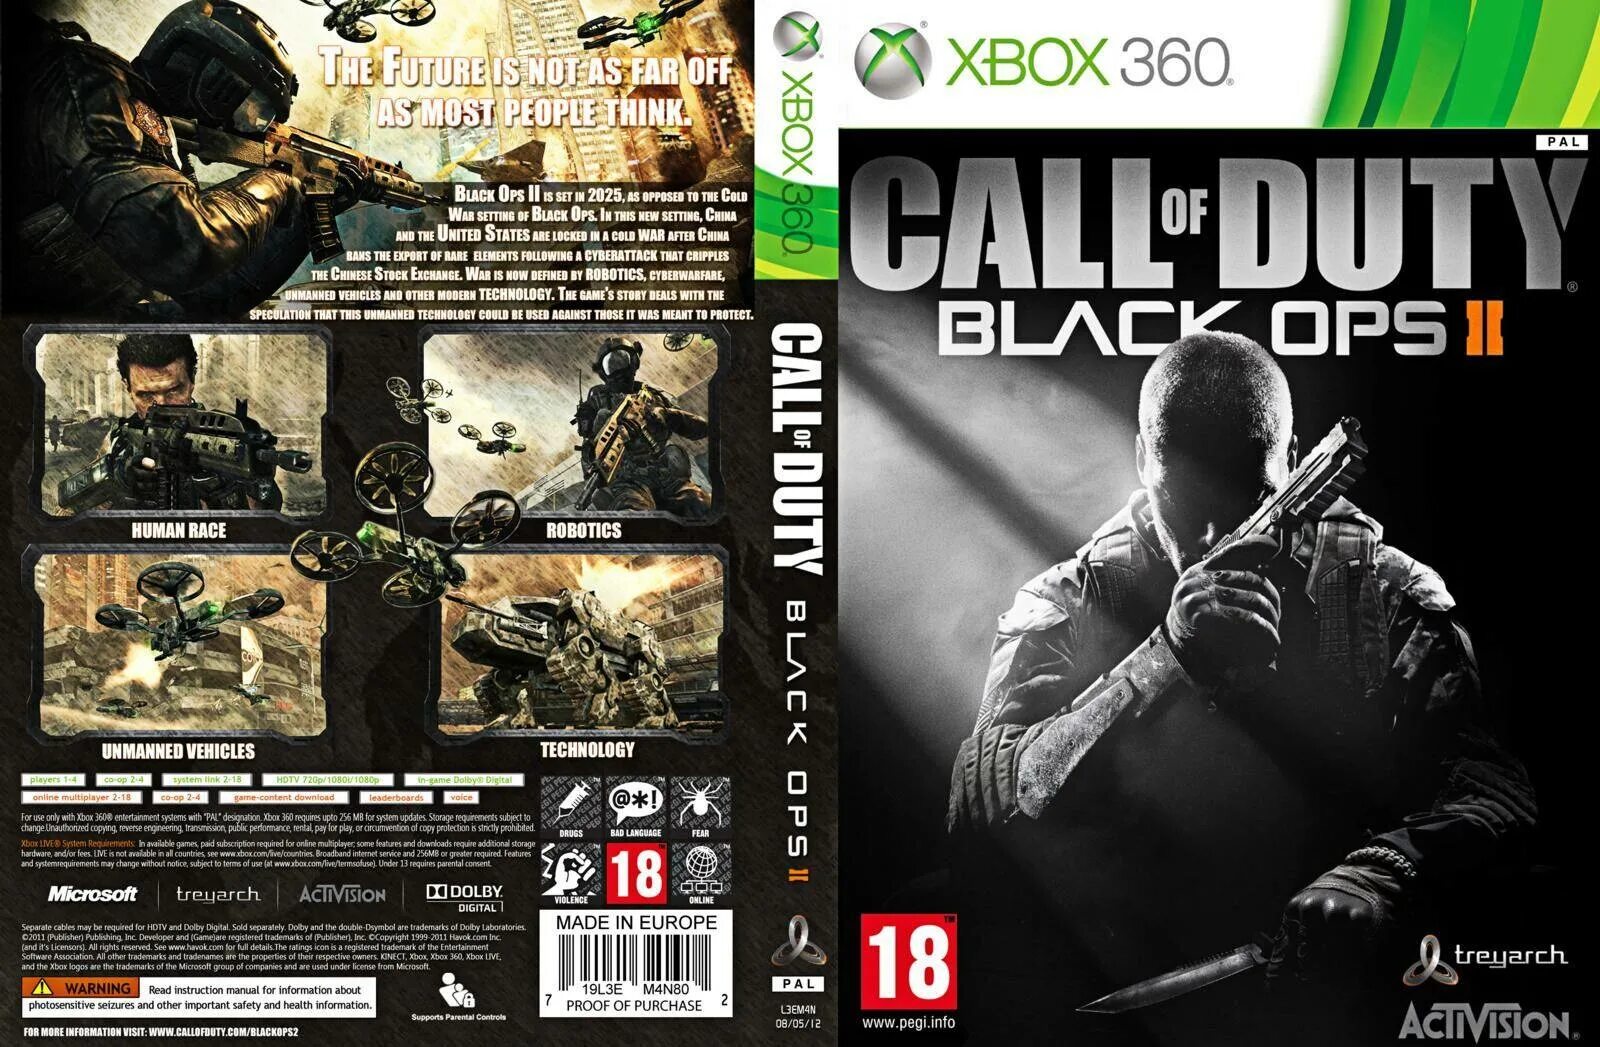 Cod Black ops 2 обложка Xbox 360. Black ops Xbox 360 обложка. Call of Duty Black ops II Xbox 360 обложка. Call of Duty диск на Xbox 360. Xbox 360 игры на компьютер